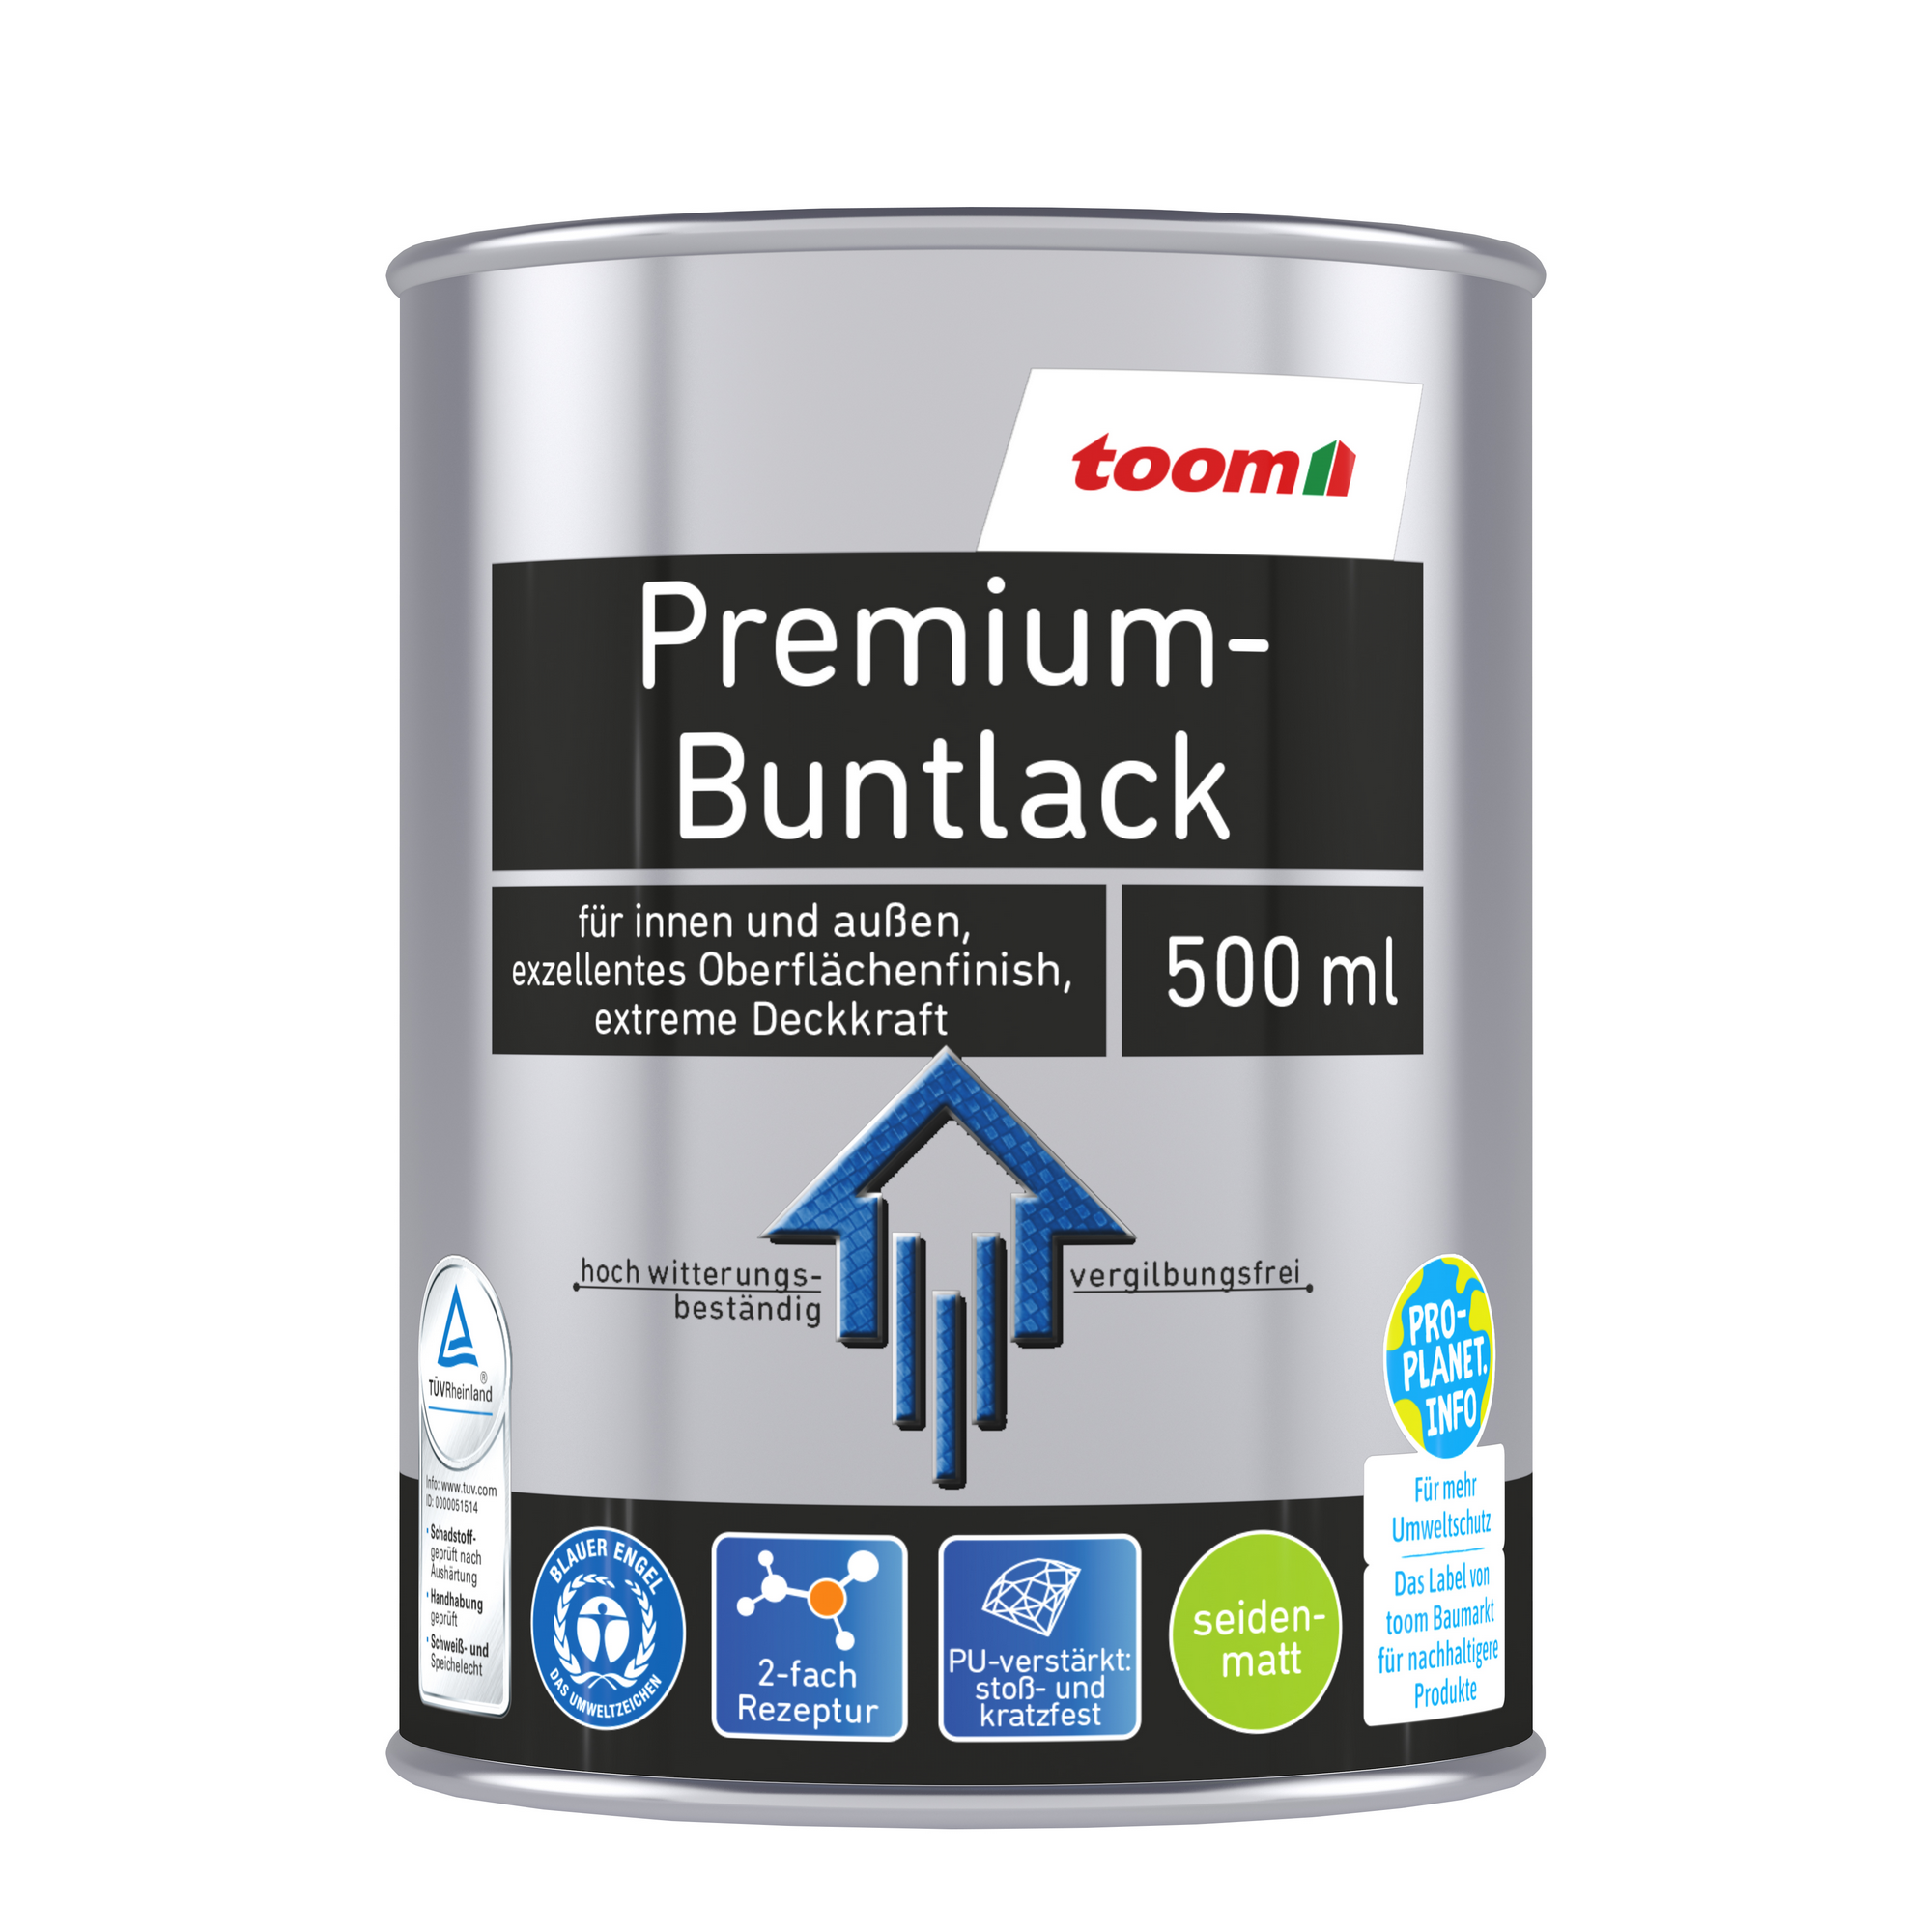 toom Premium-Buntlack elfenbeinfarben seidenmatt 500 ml